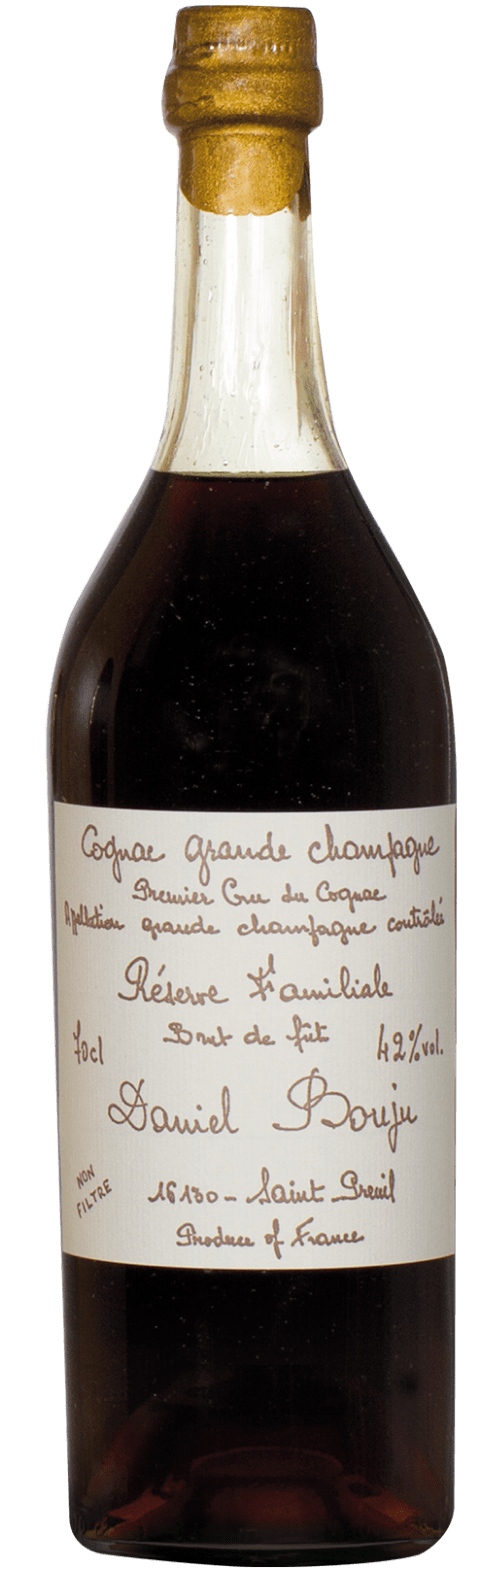 Reserve Familiale Cognac Grande Champagne A.C.C. Daniel Bouju